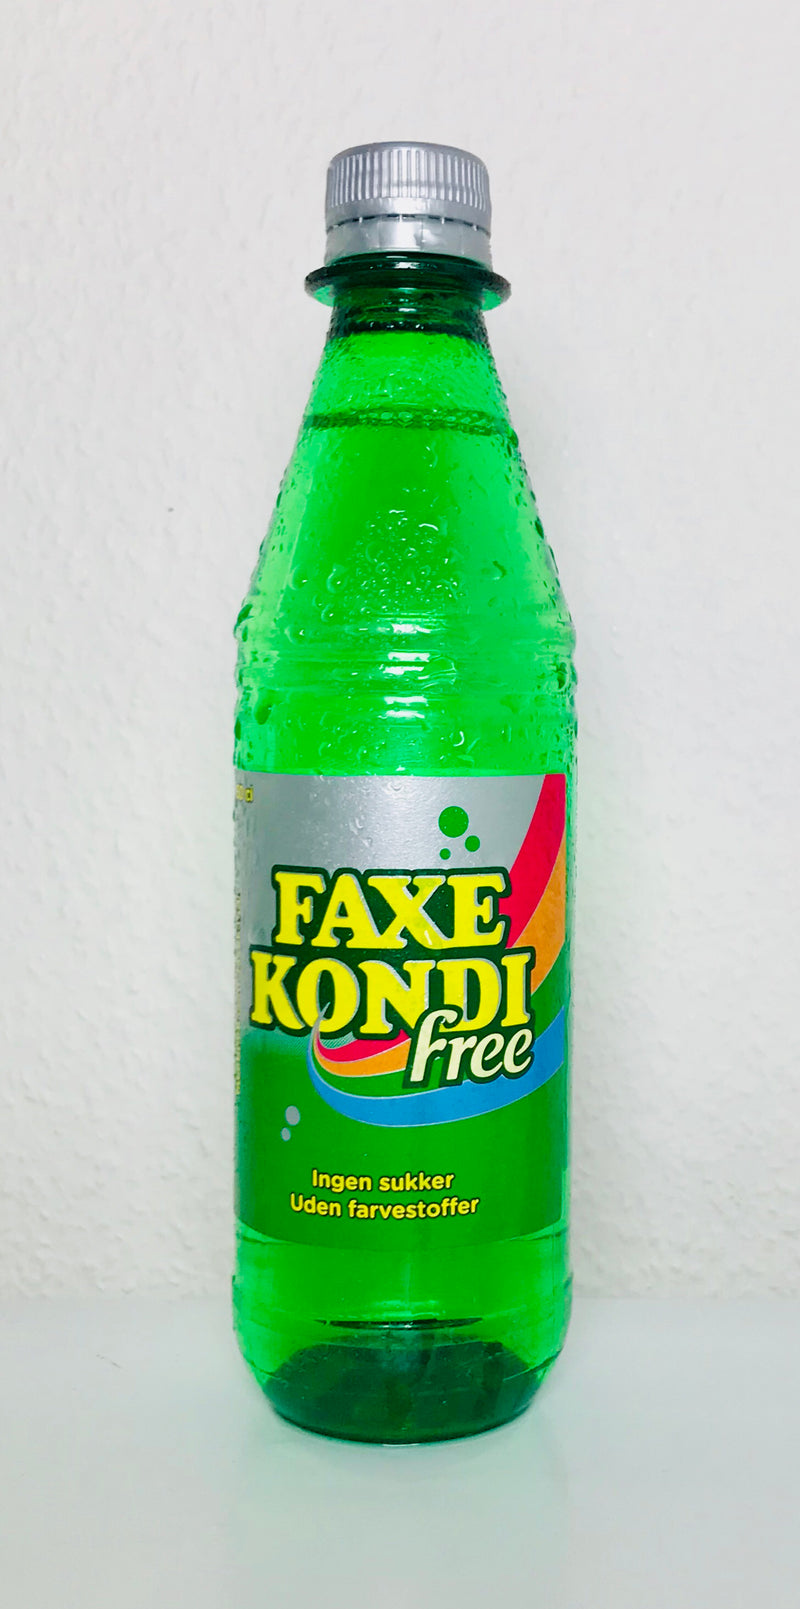 Kondi Free - Faxe, 50cl (inkl. pant)